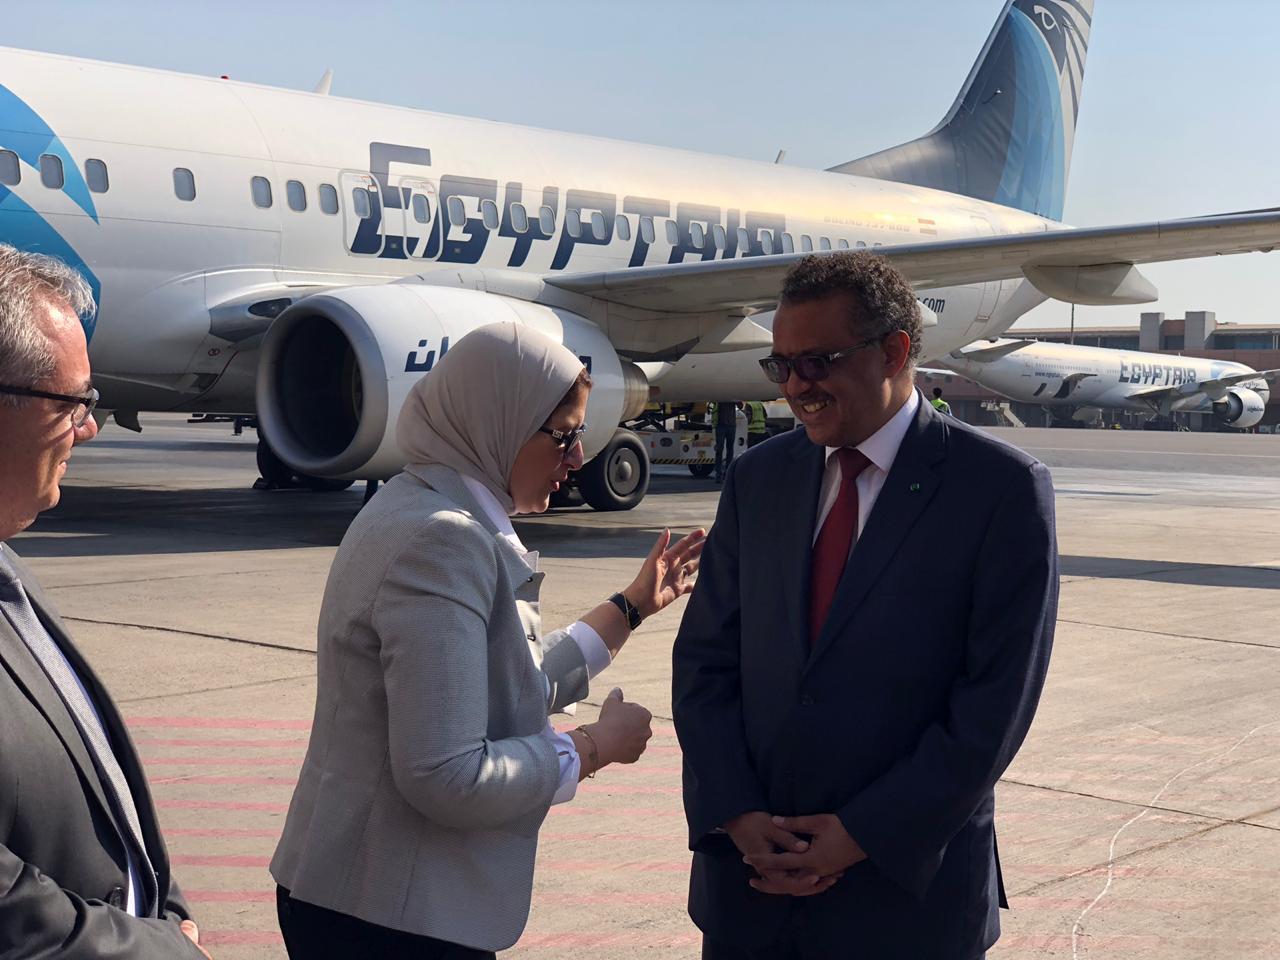 مدير منظمة الصحة العالمية يصل مصر